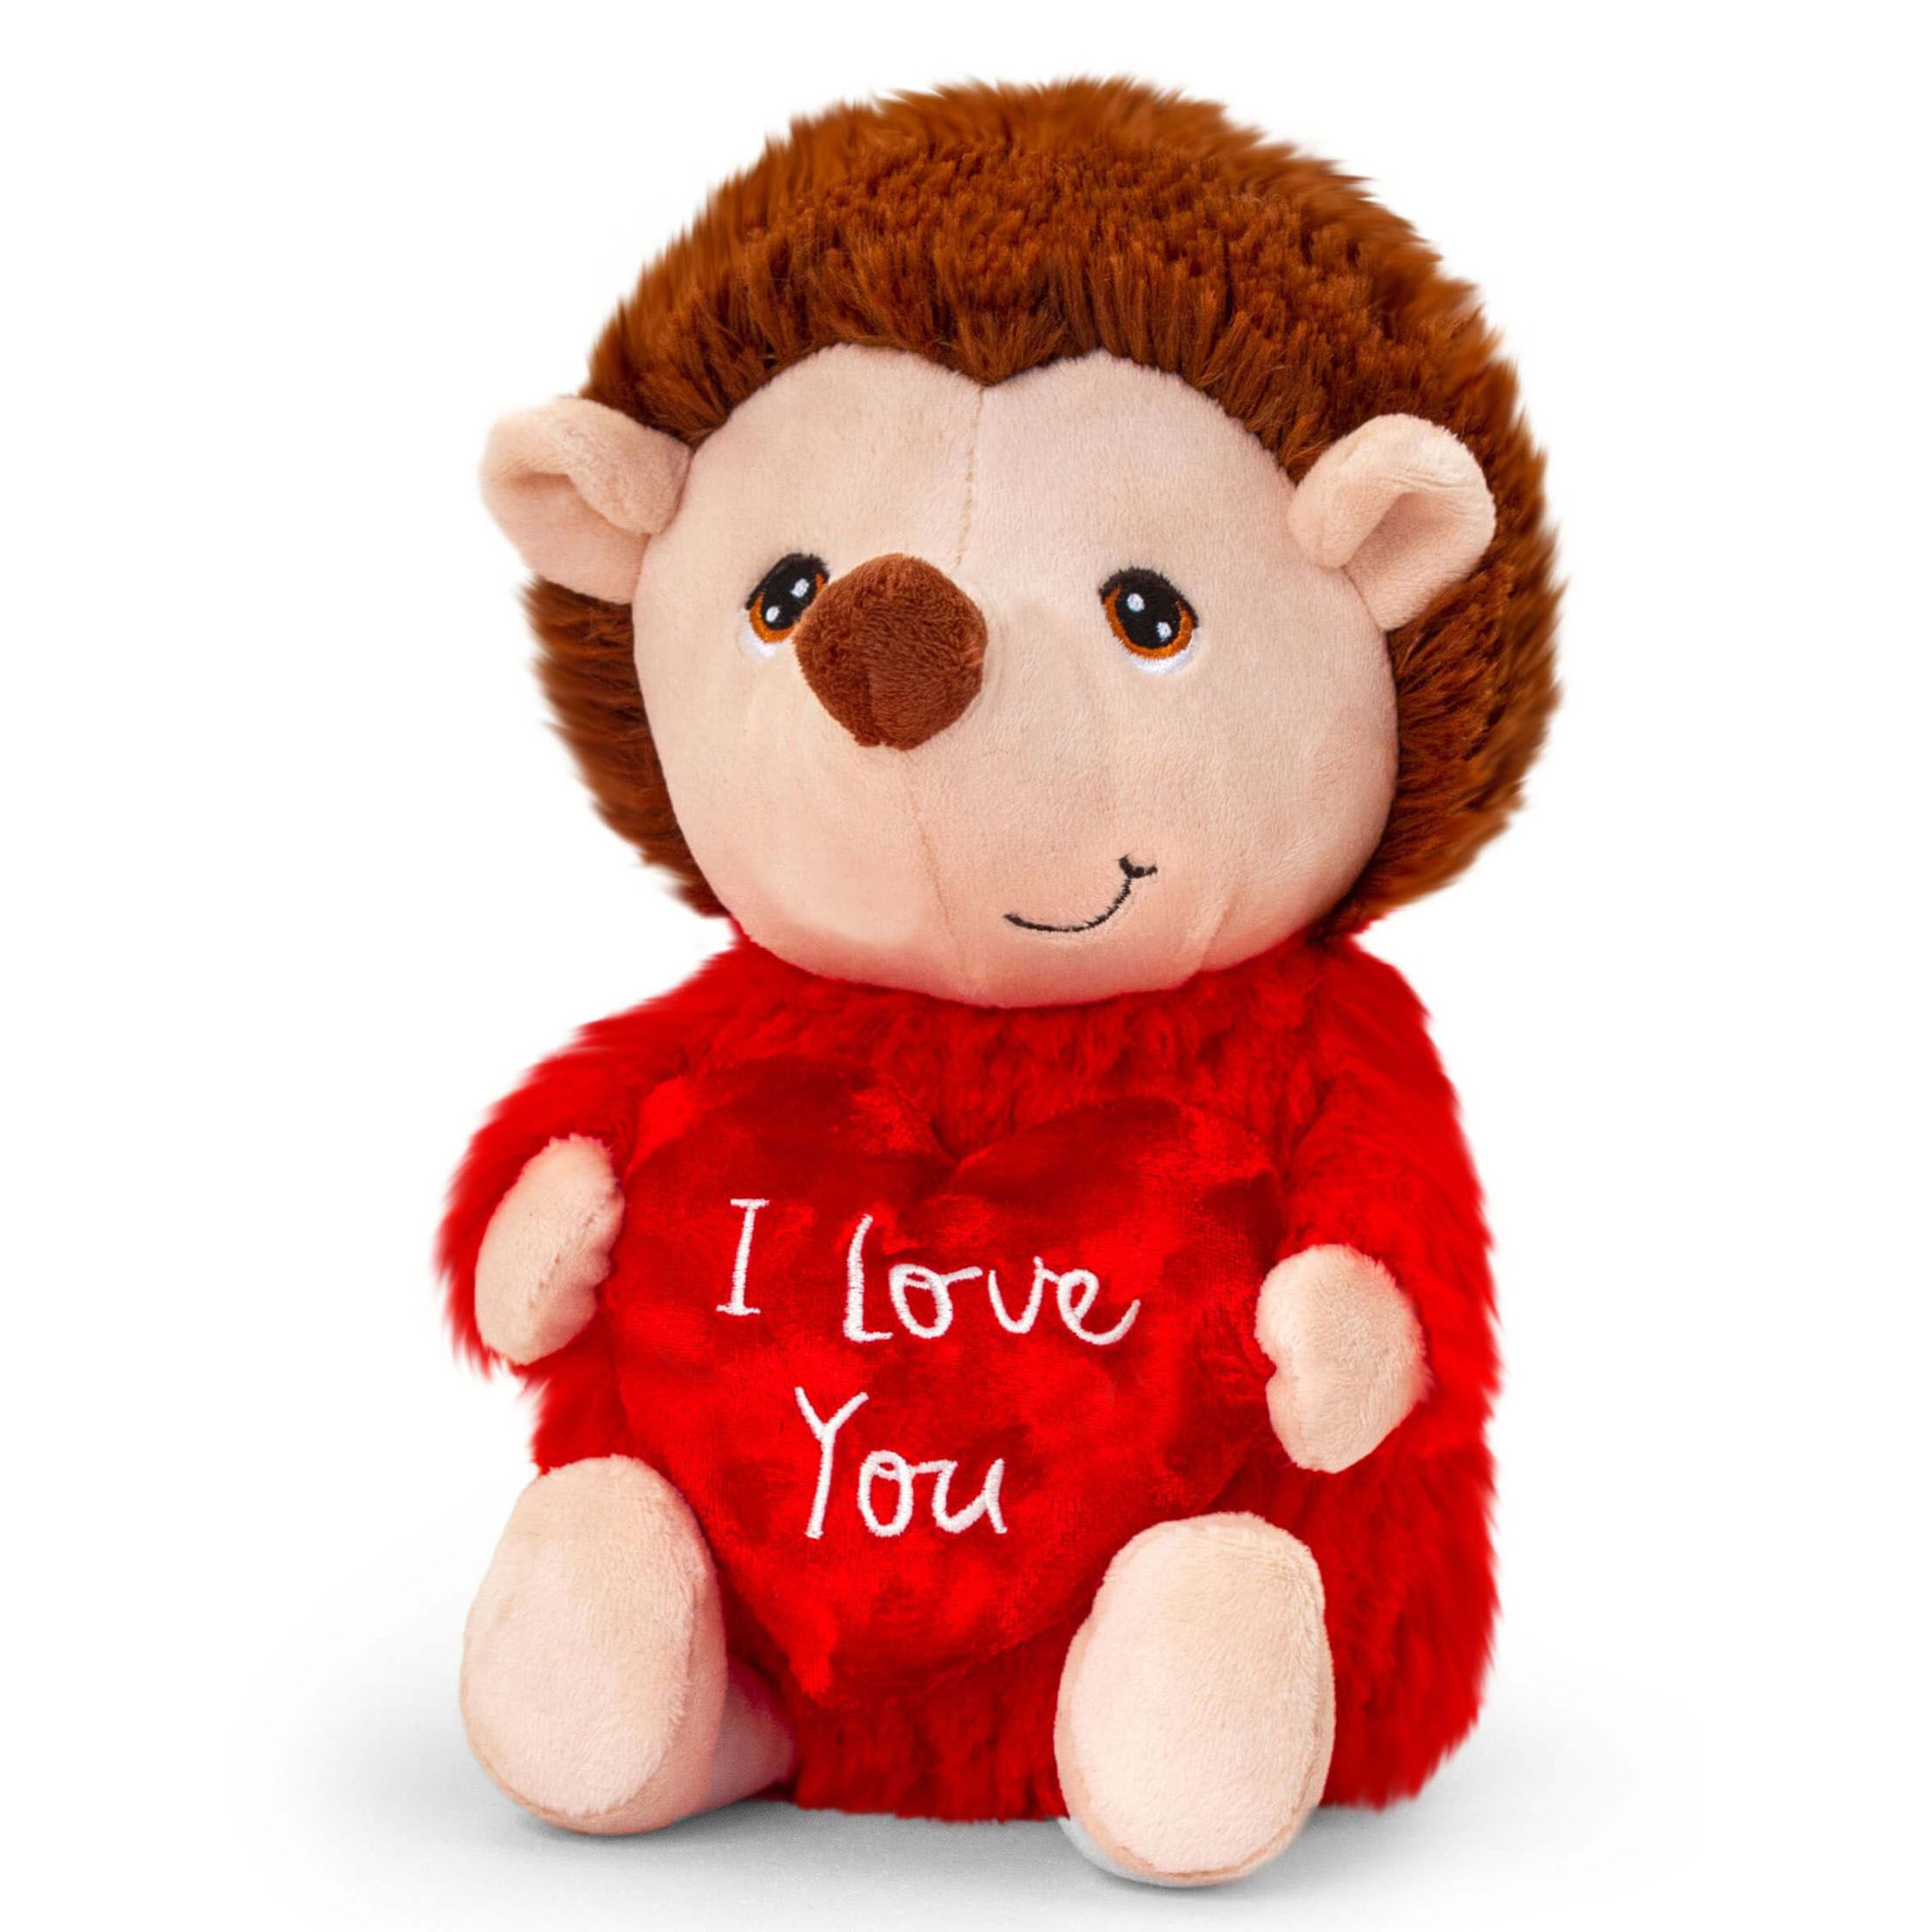 Keeleco, Таралеж със сърце I love you, плюшена играчка, 25 см, Keel Toys